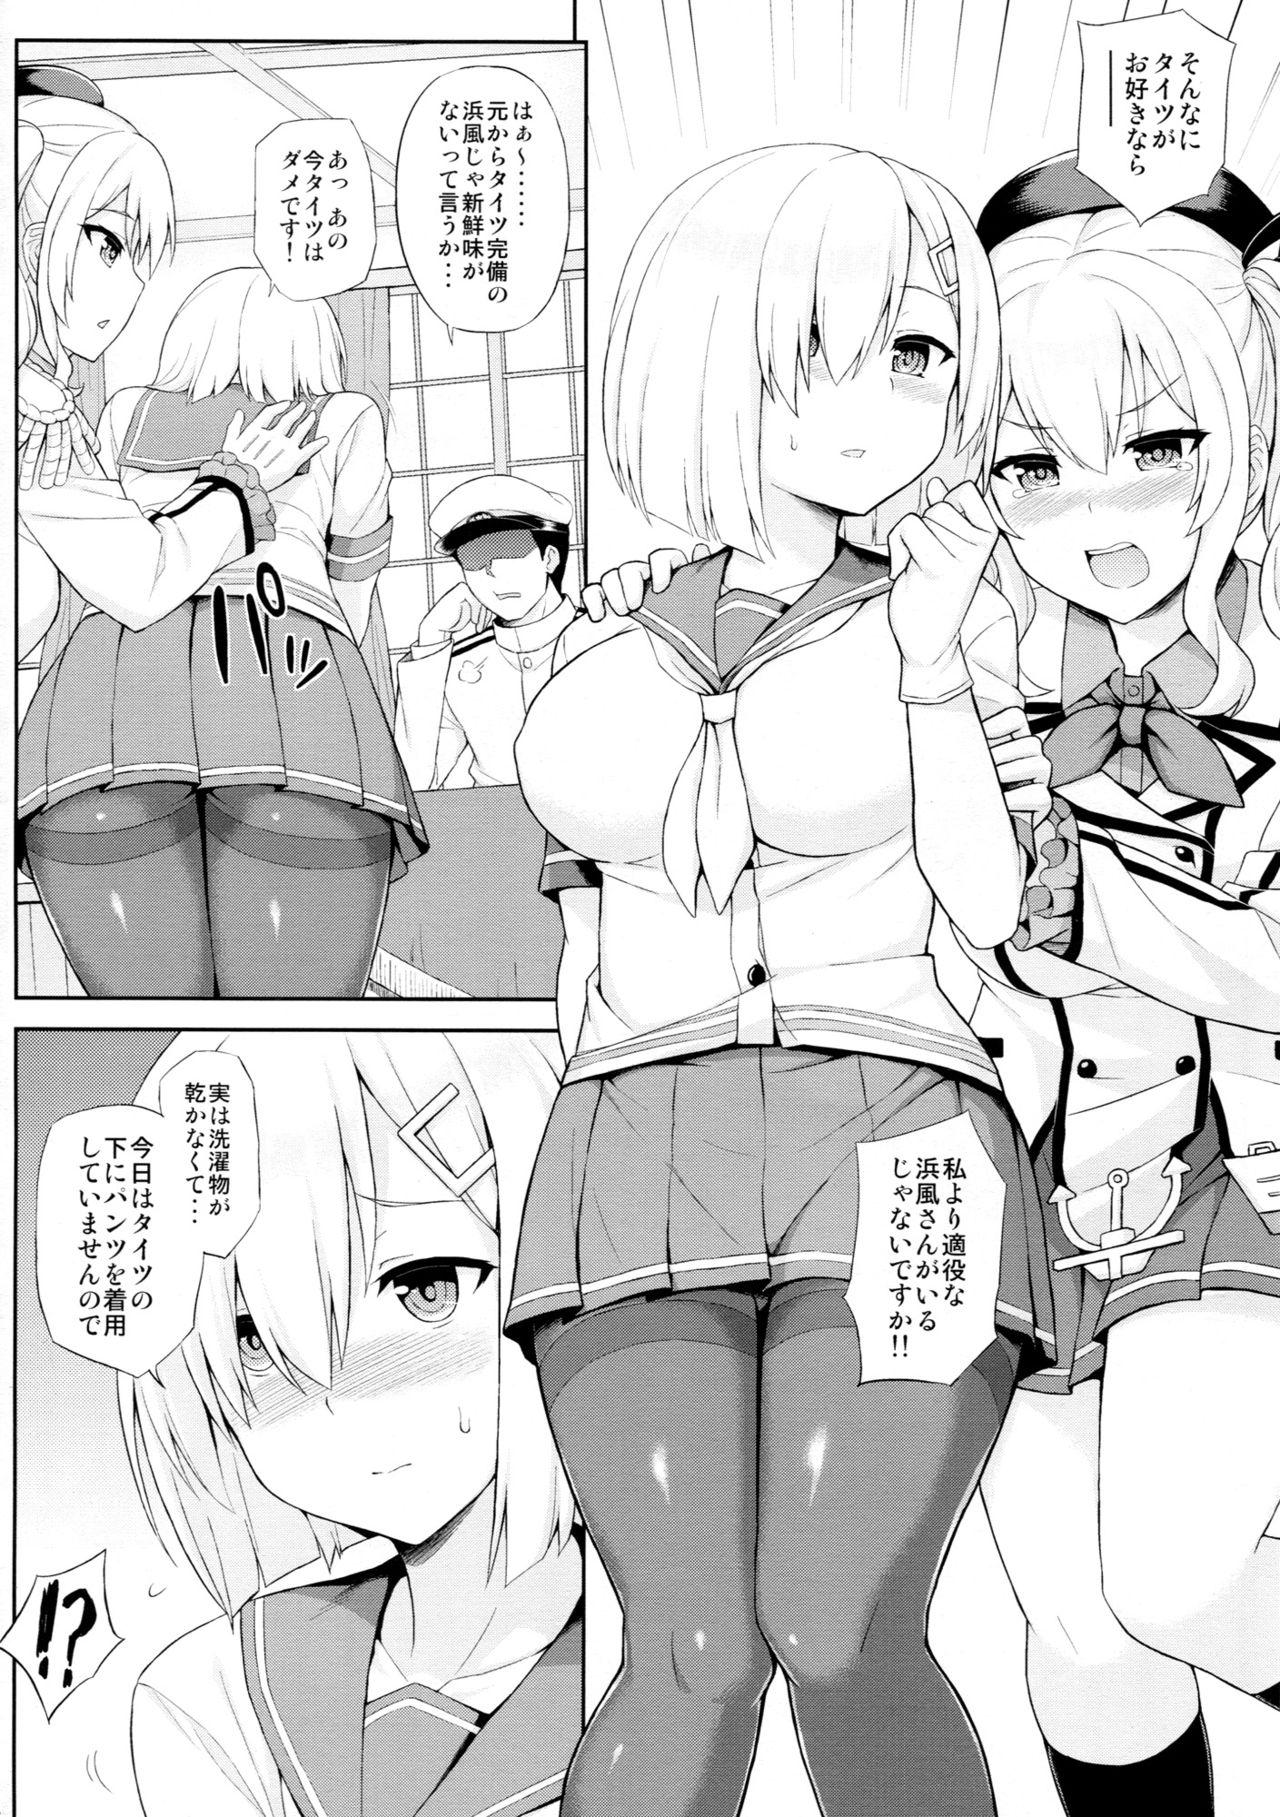 Groupfuck Teitoku-san, Tights Soubi wa Shiyou desu! - Kantai collection Shesafreak - Page 3